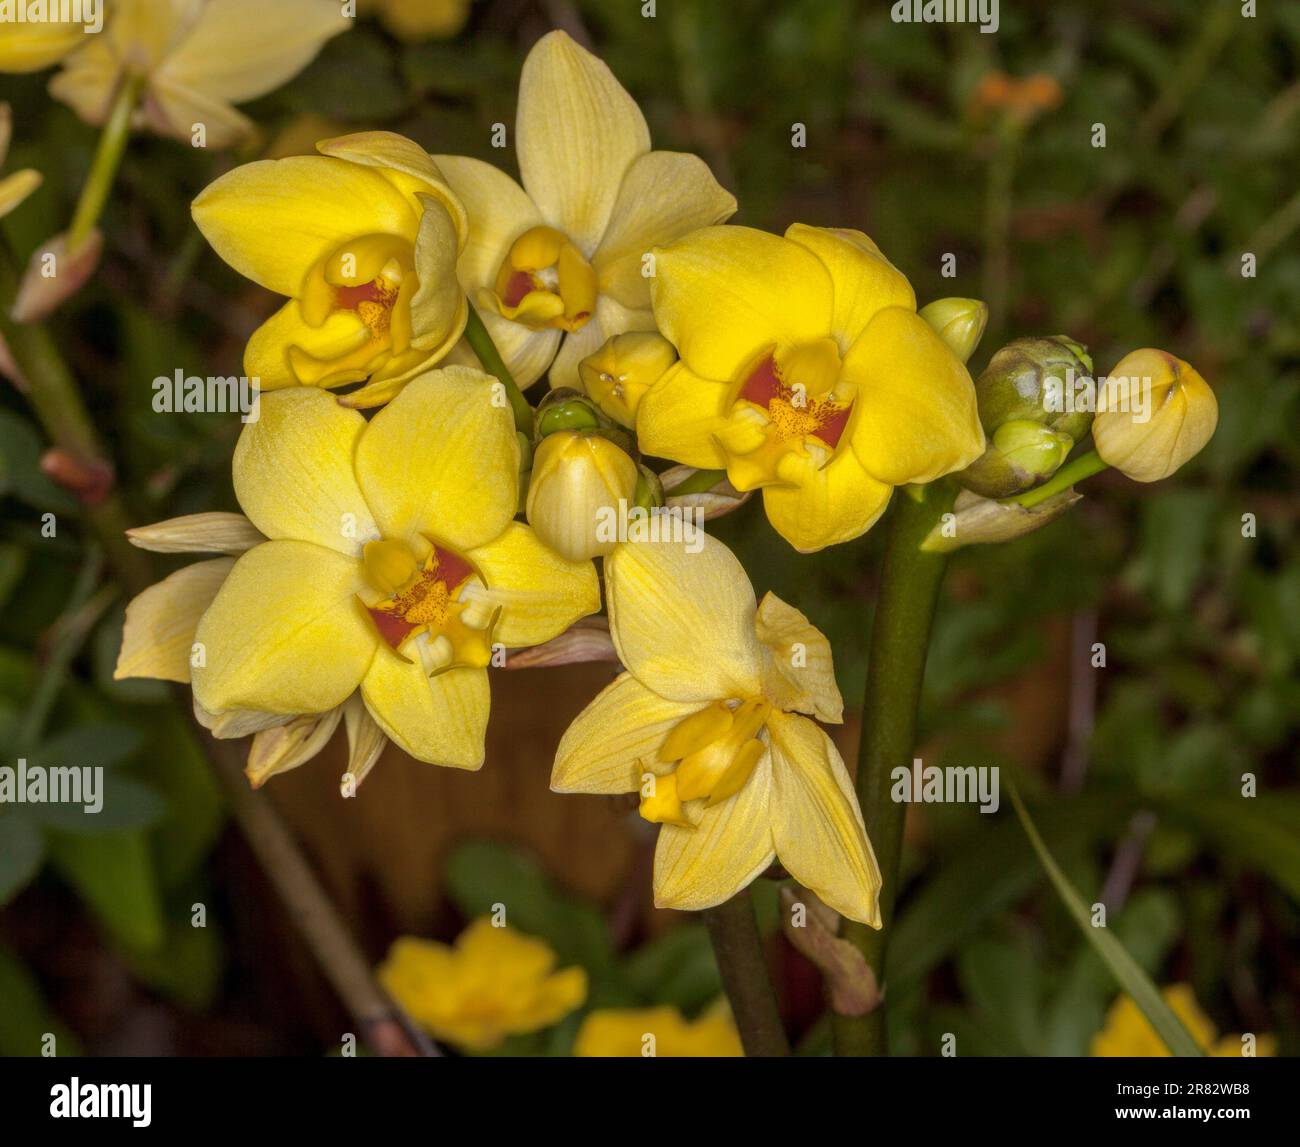 Cluster von schönen gelben Blumen der gemahlenen Orchidee, Spathoglottis-Sorte auf dunklem Hintergrund Stockfoto